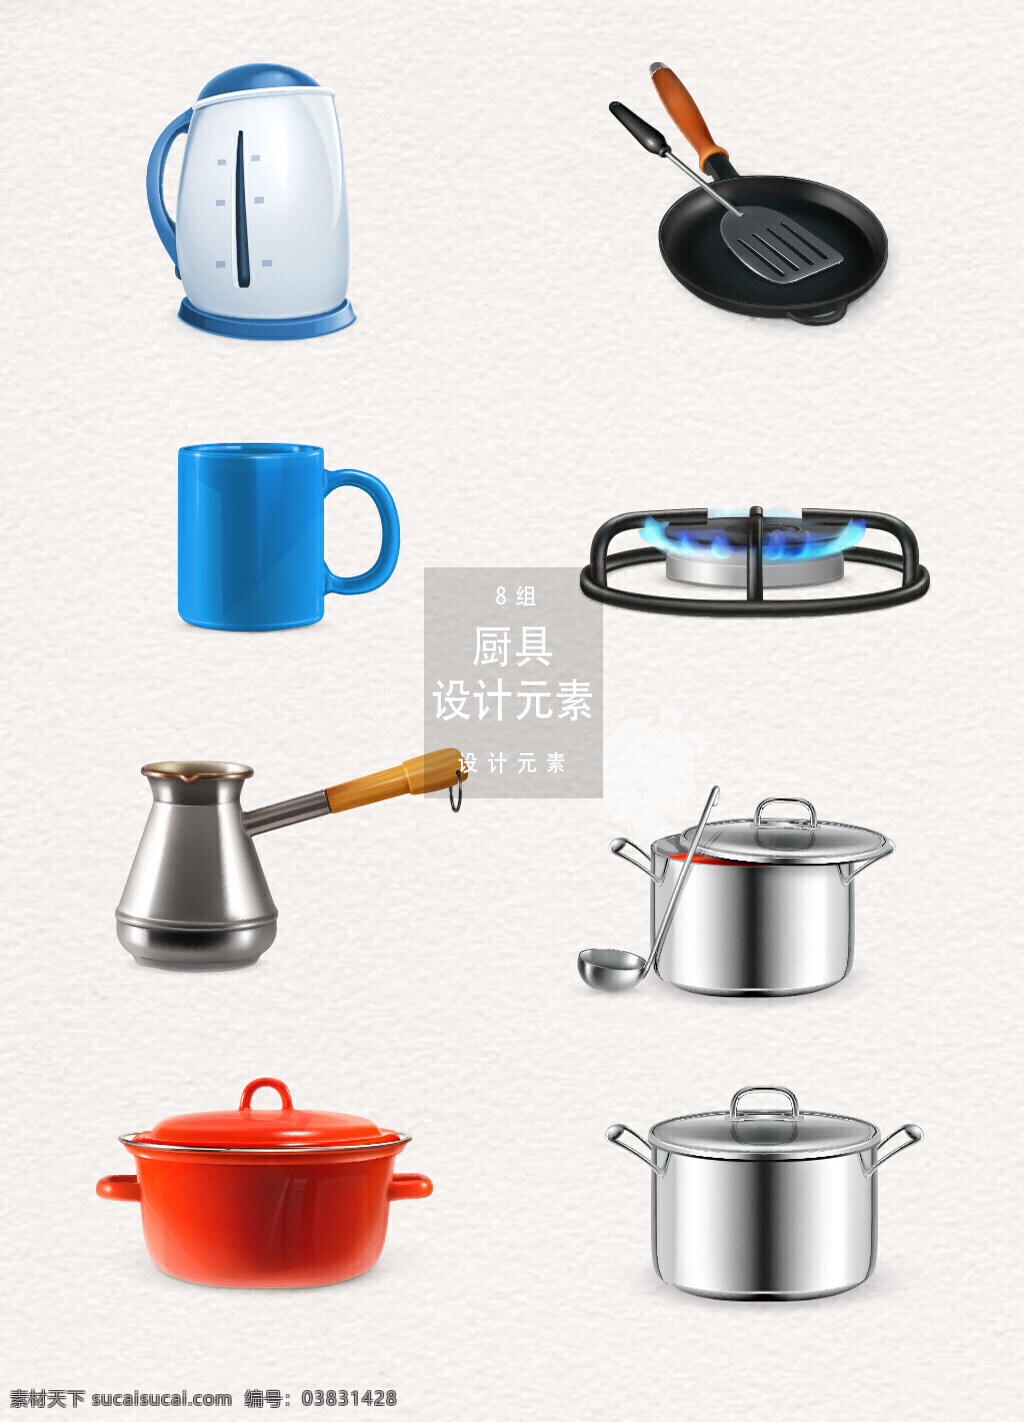 厨房用具 矢量 元素 设计元素 厨房 厨具 电器 锅 水壶 电水壶 燃气炉 咖啡壶 汤锅 平底锅 陶瓷锅